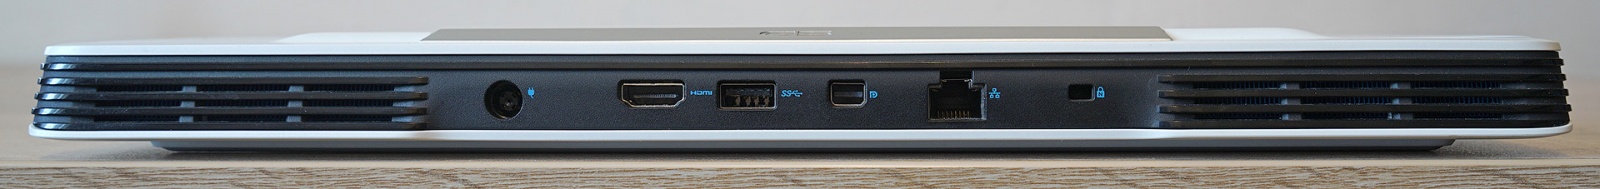 Dell G5 5590: один из самых доступных игровых ноутбуков с RTX 2060 - 9